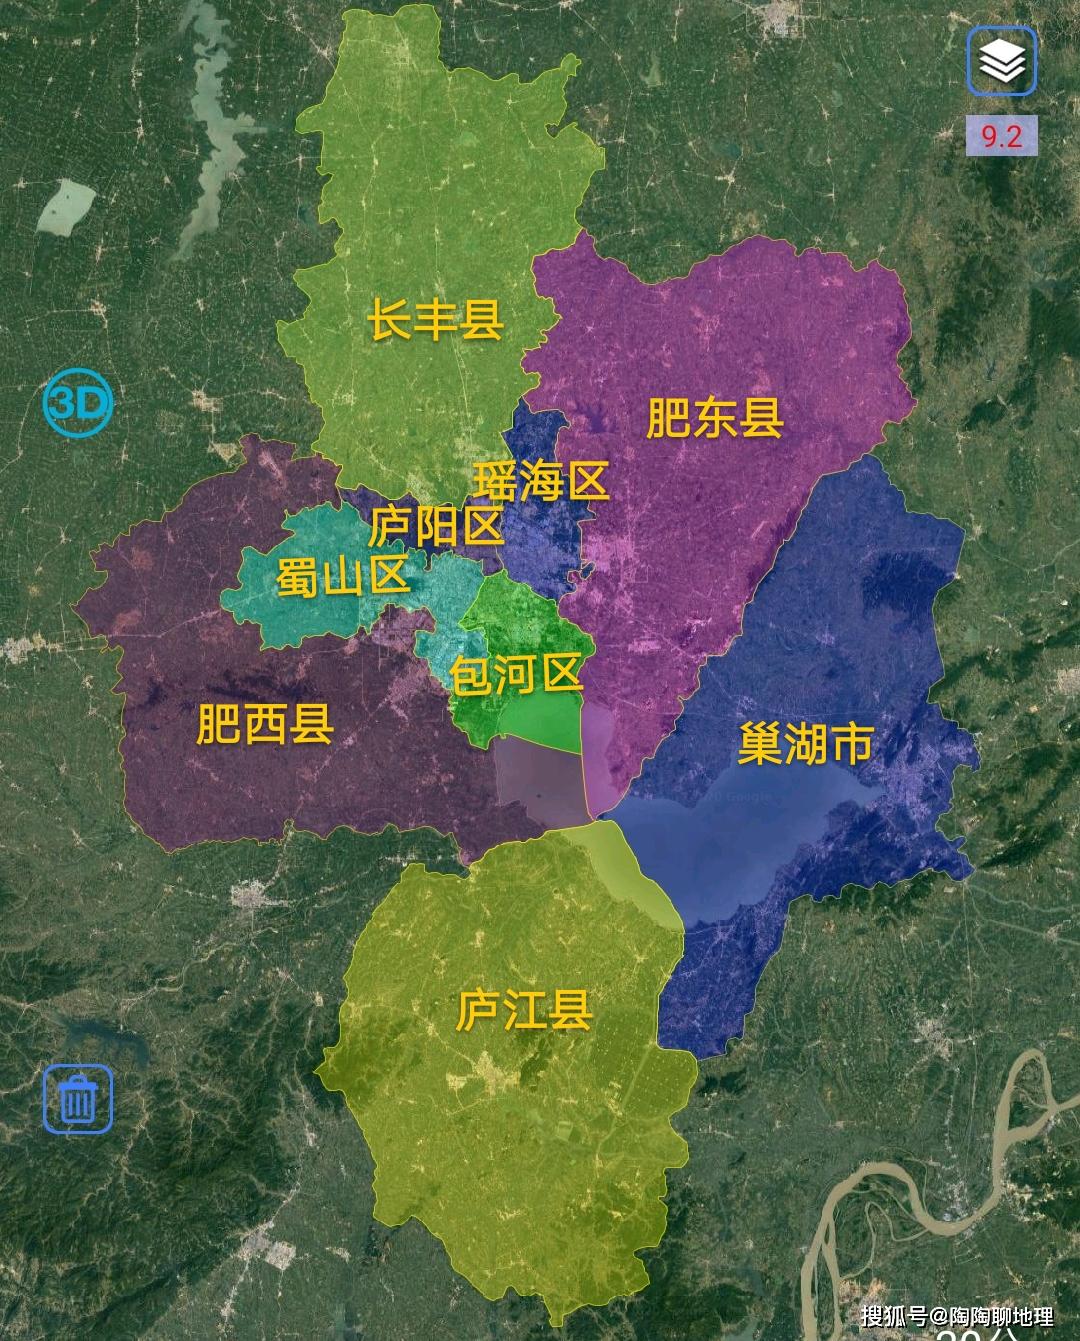 原创合肥市4区4县1市建成区面积排名最大是蜀山区最小是庐江县